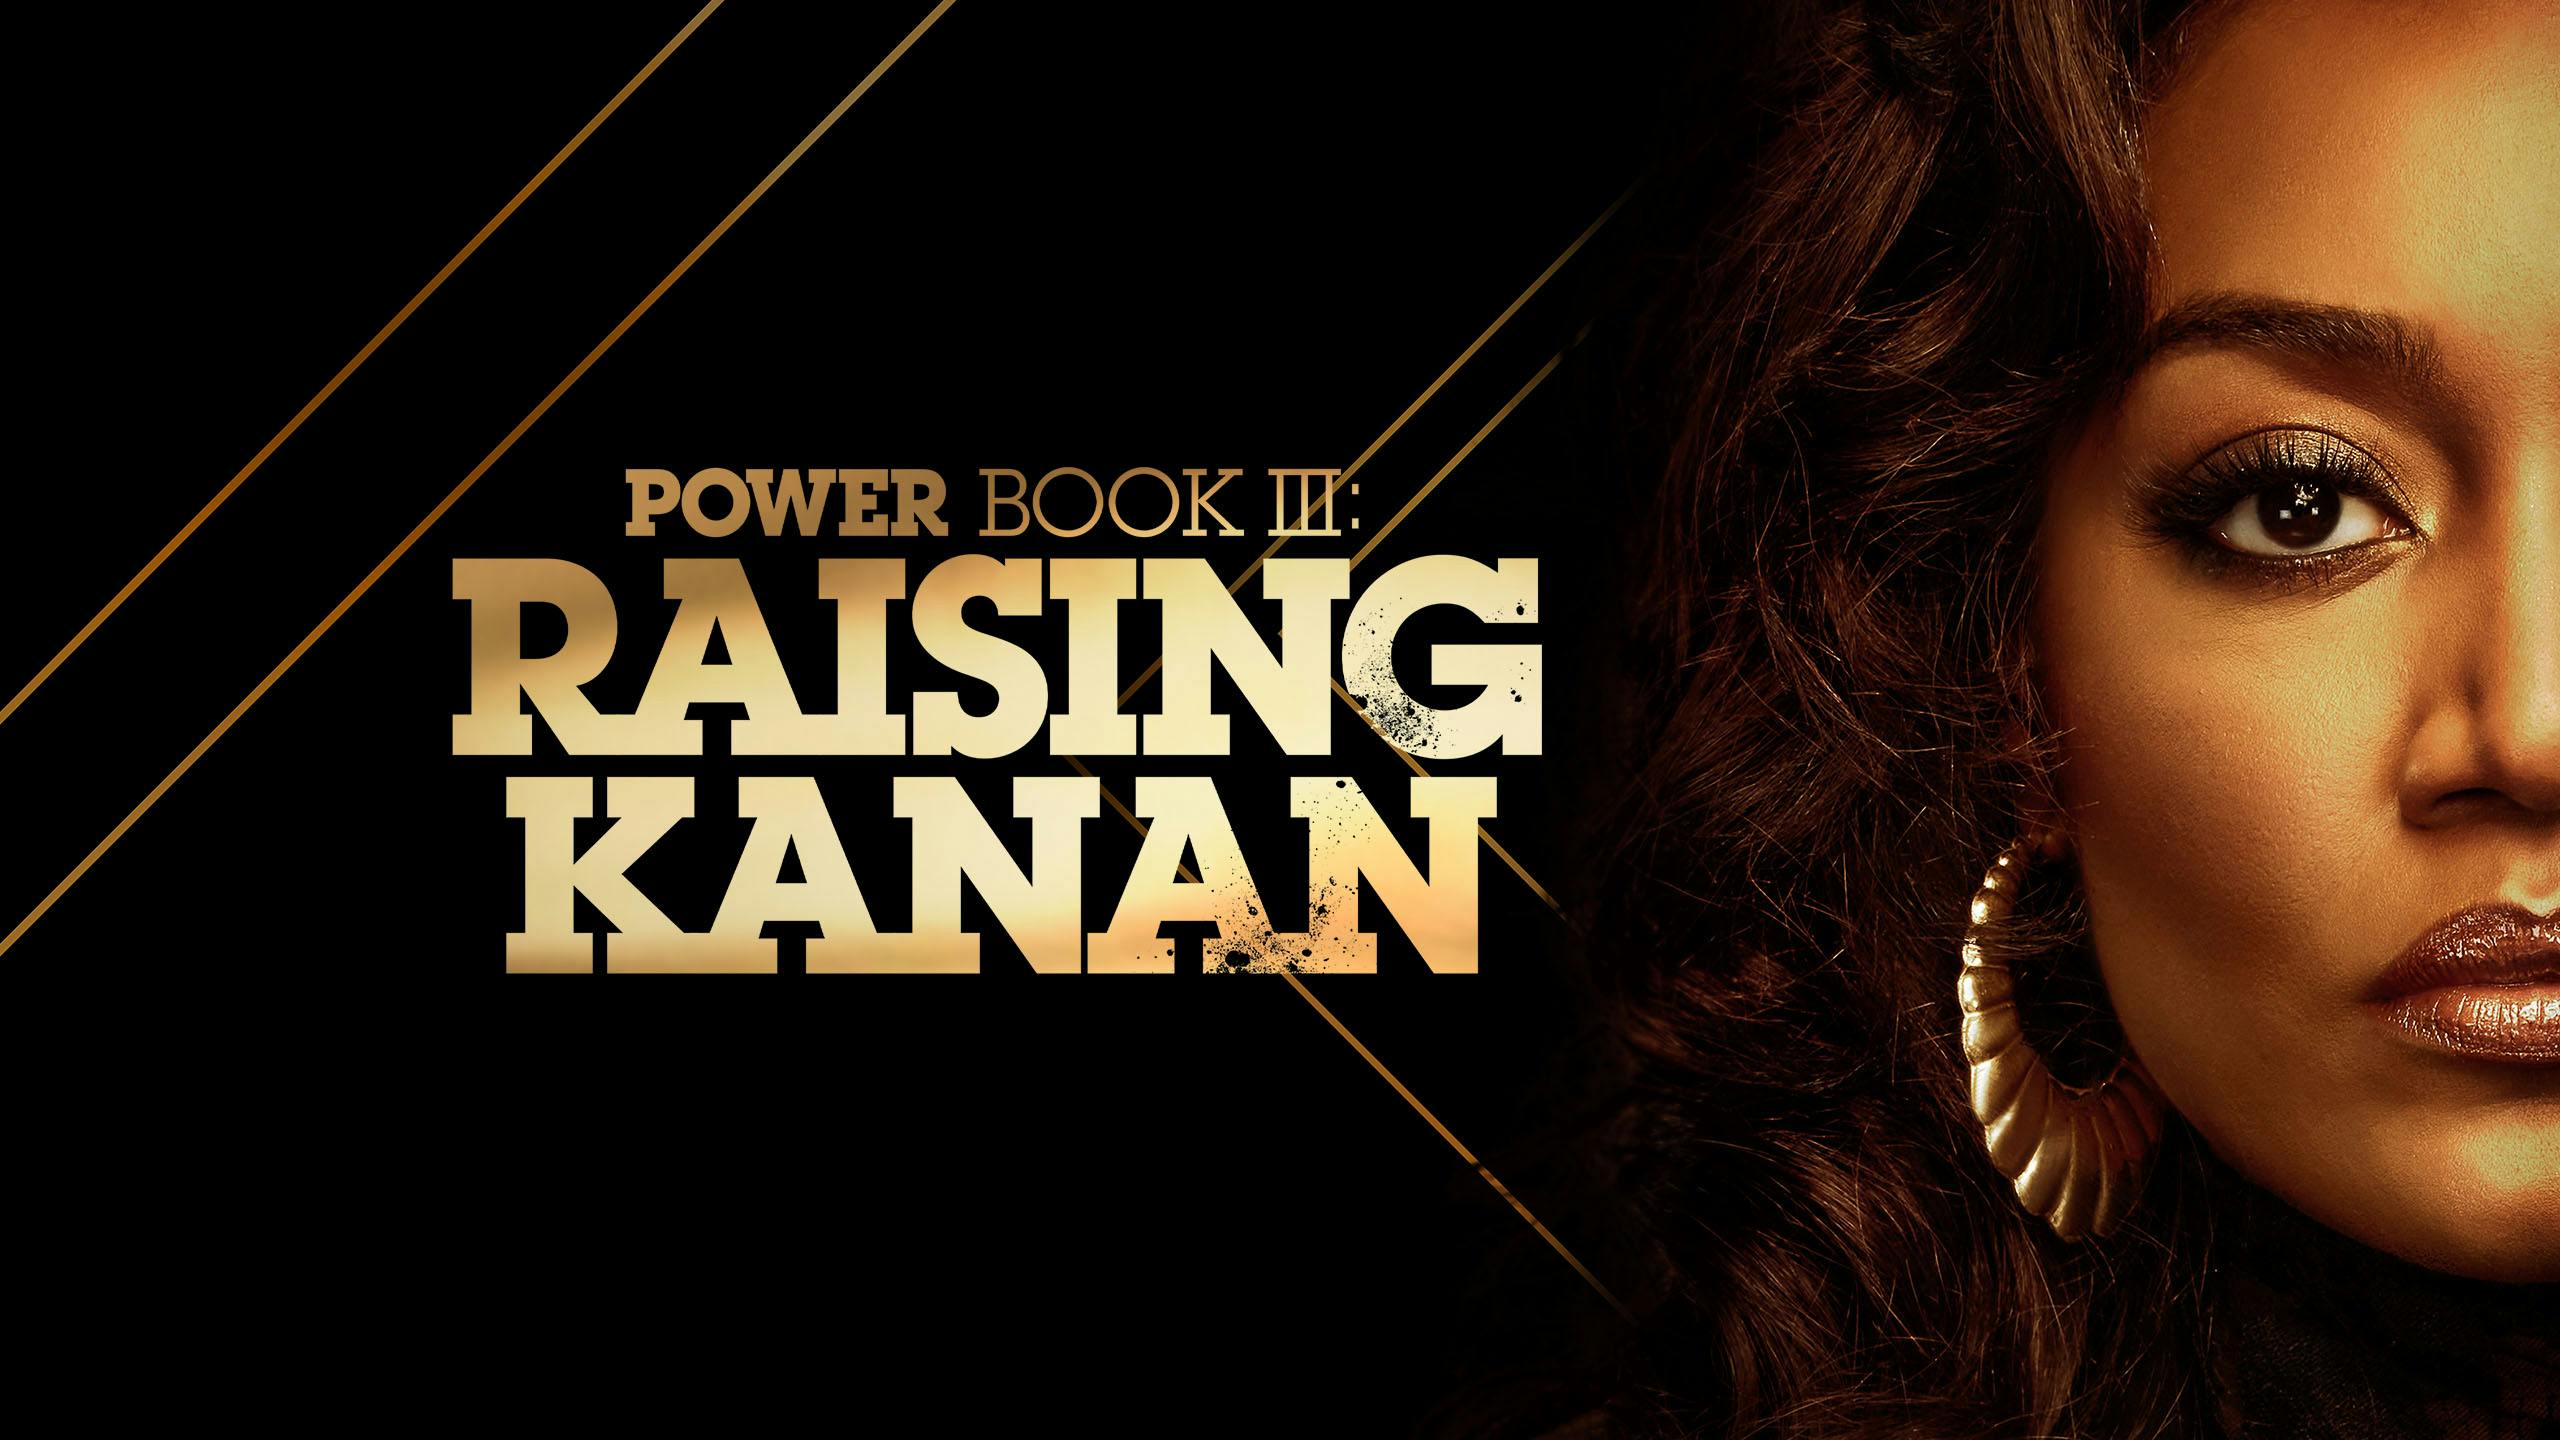 دانلود زیرنویس سریال Power Book III: Raising Kanan 2021 – بلو سابتايتل